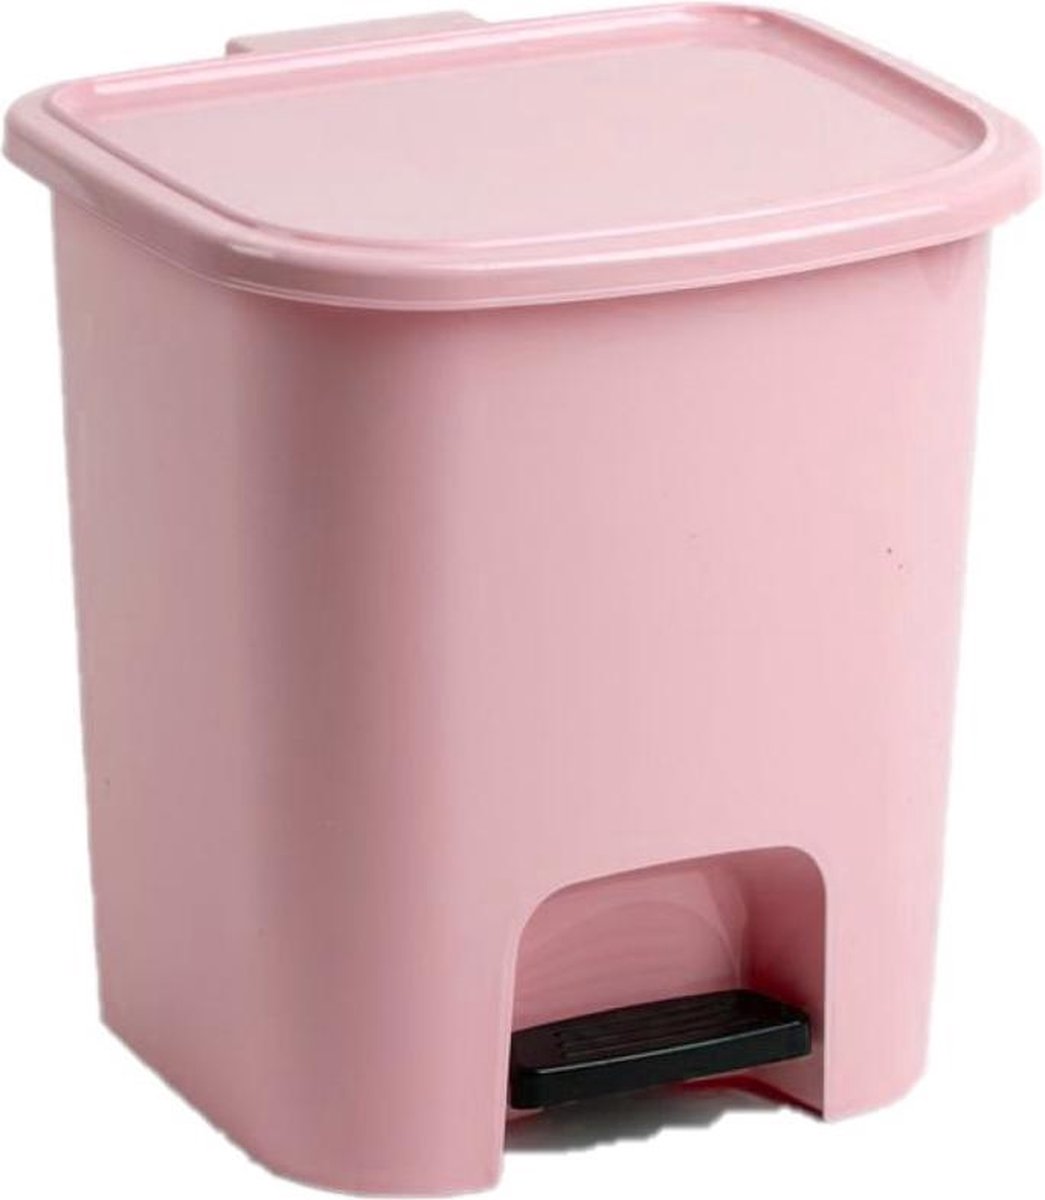 2x stuks kunststof afvalemmers/vuilnisemmers/pedaalemmers roze 7.5 liter met binnenbak, deksel en pedaal 24 x 22 x 25.5 cm